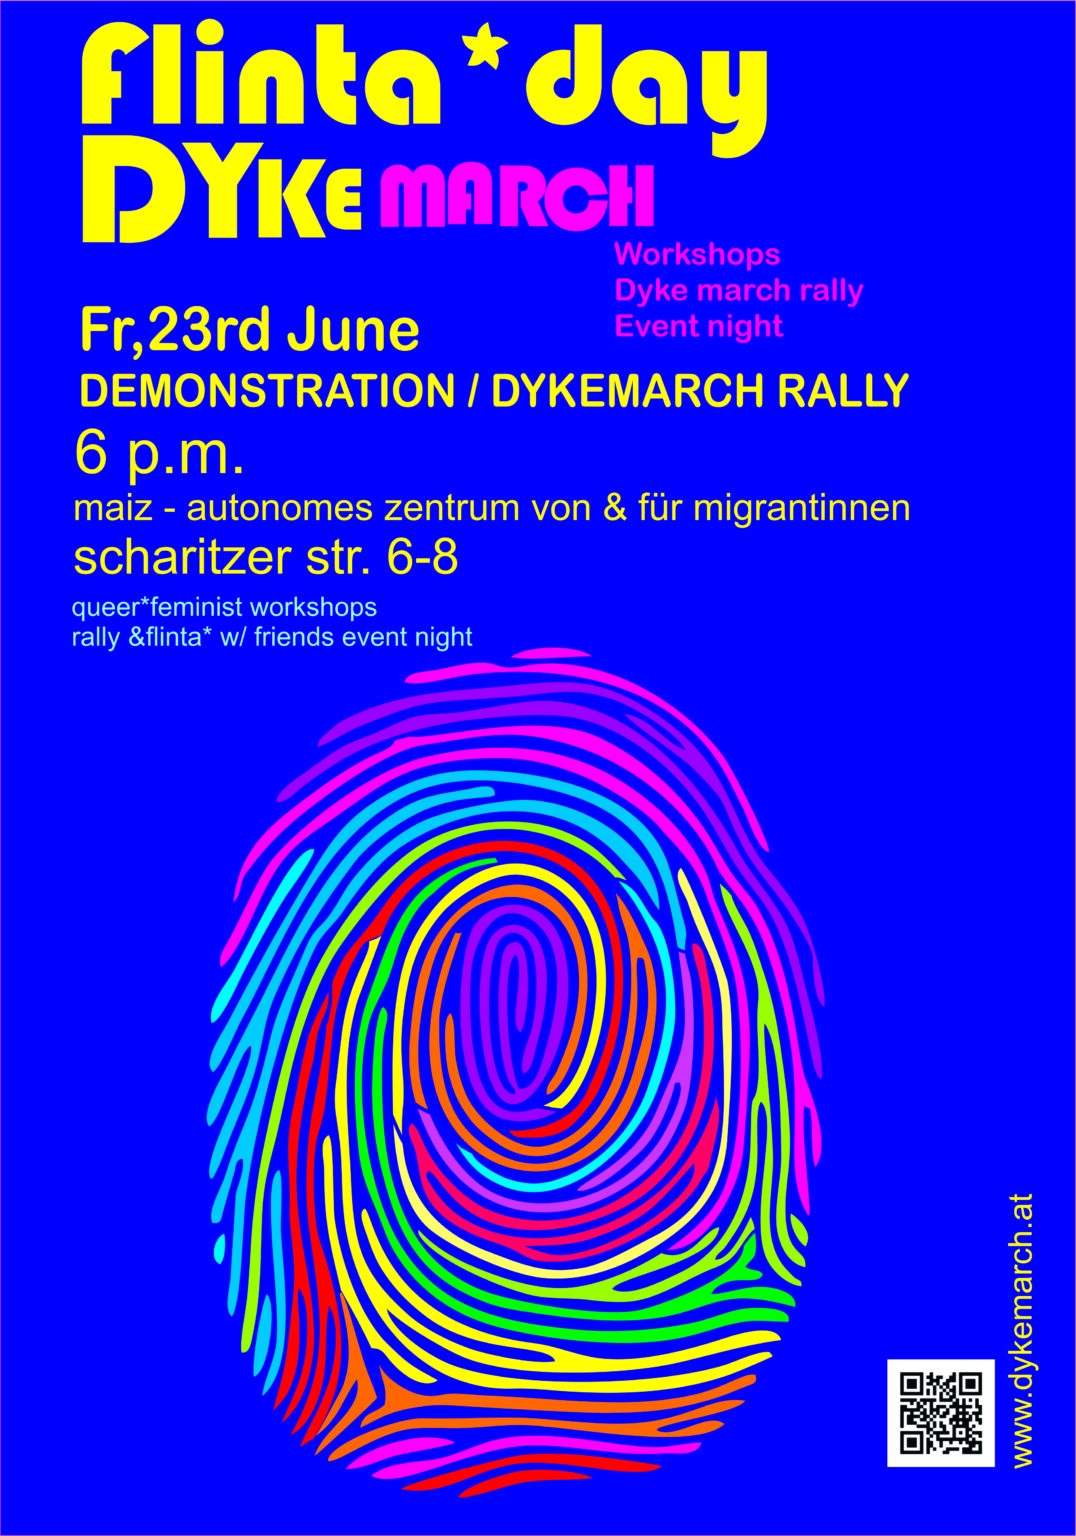 Ein blaues Plakat auf dem der Dyke March für den 23. Juni in Linz angekündigt wird. Die Demo findet um 18:00 vor der Scharitzerstraße 6-8 statt.